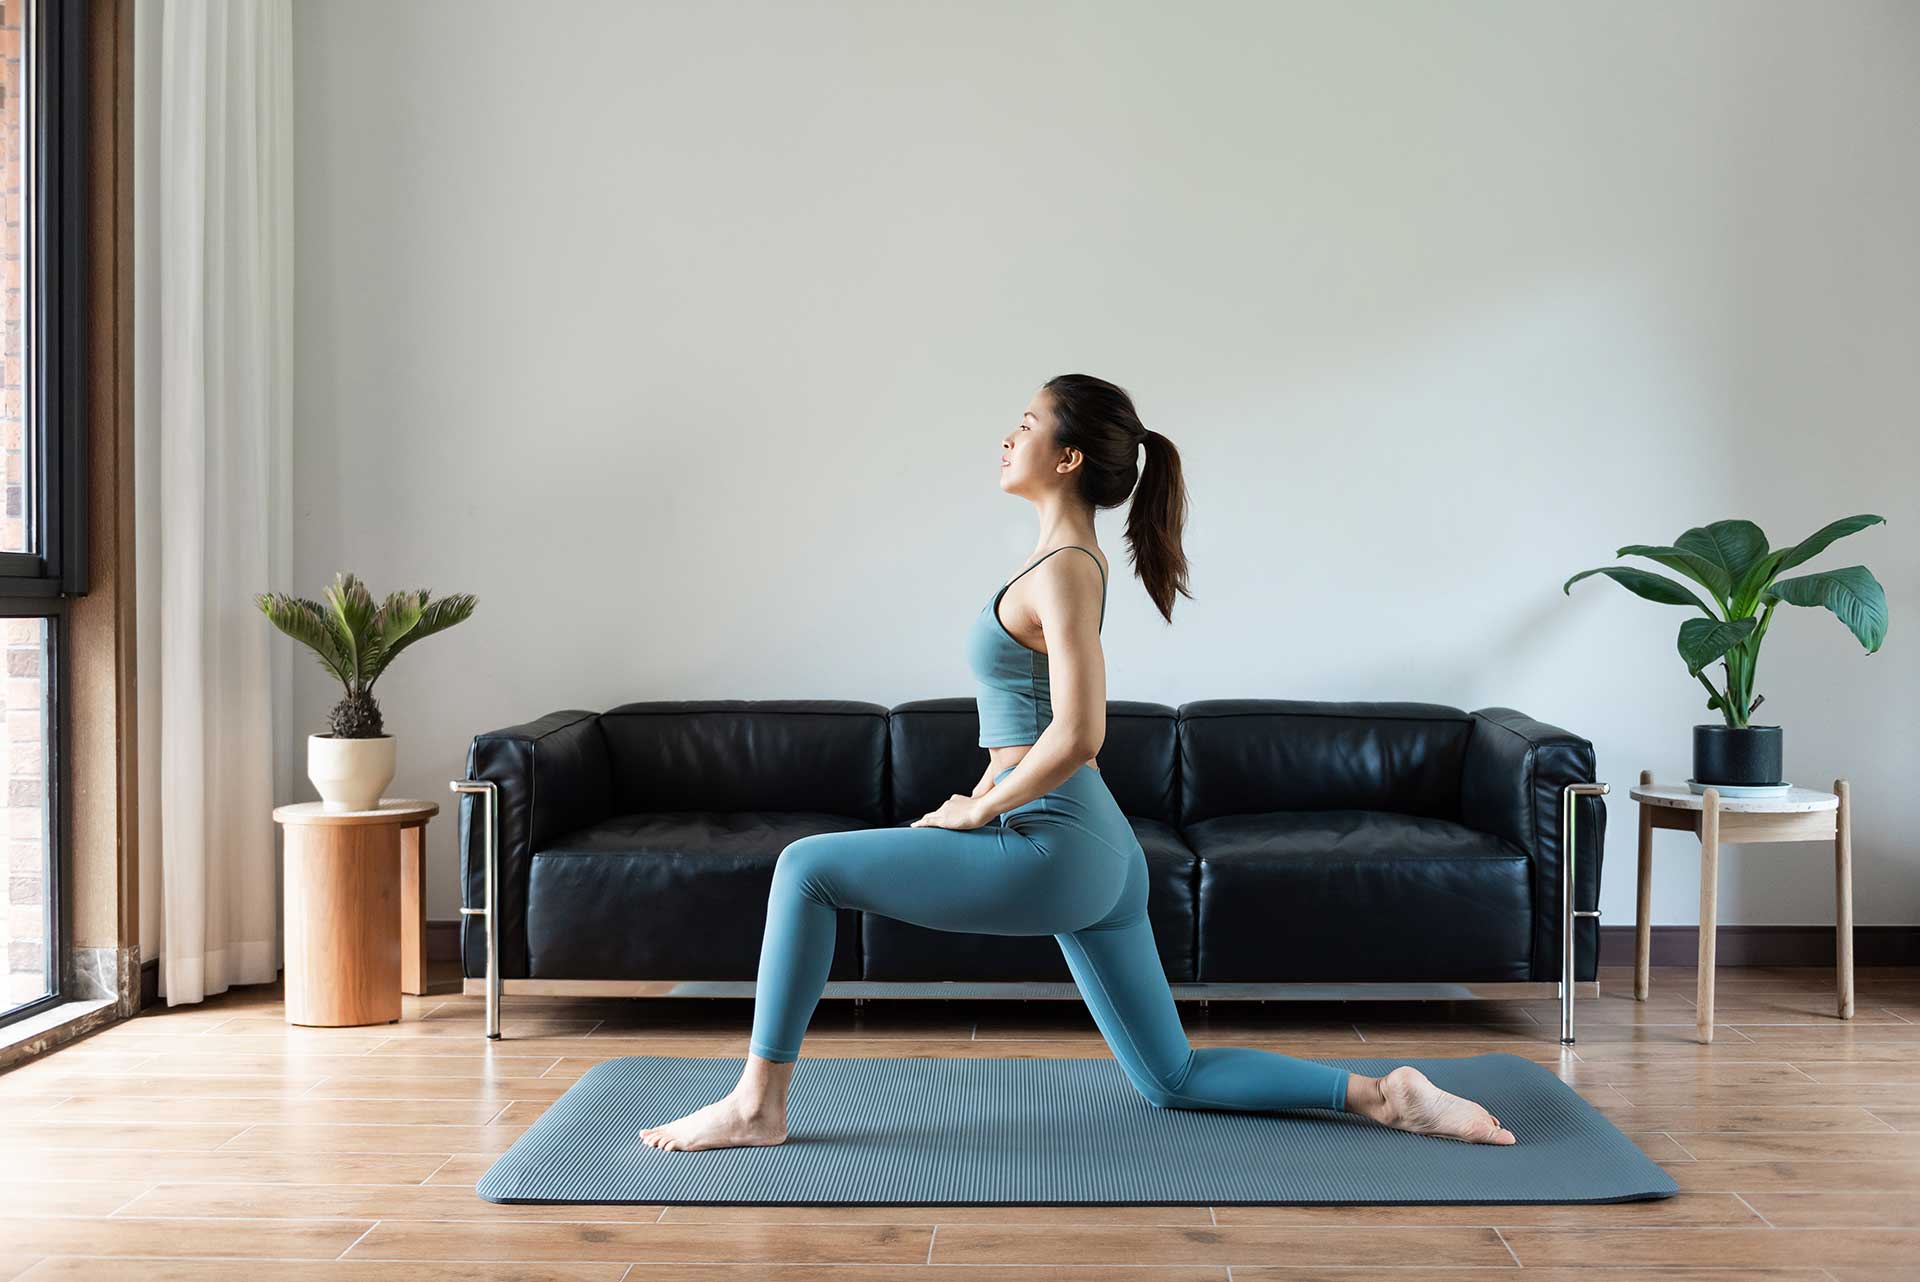 瑜伽墊的紋路設計可以增加墊子的止滑性與抓地力，建議可以選擇有紋路的瑜伽墊，在練習時可以讓動作更加穩定。